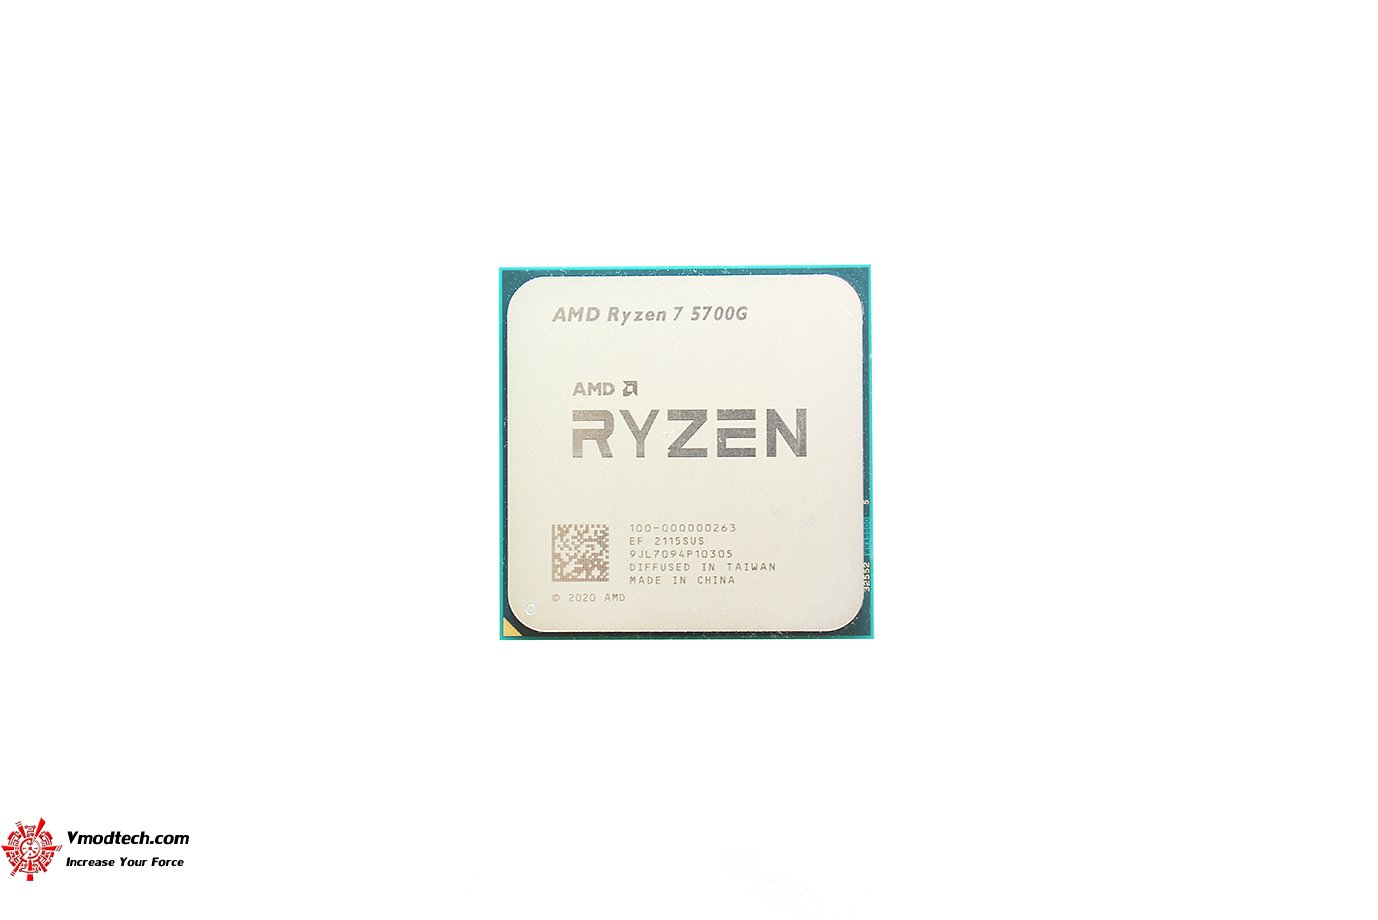 dsc 6953 AMD RYZEN 7 5700G PROCESSOR REVIEW